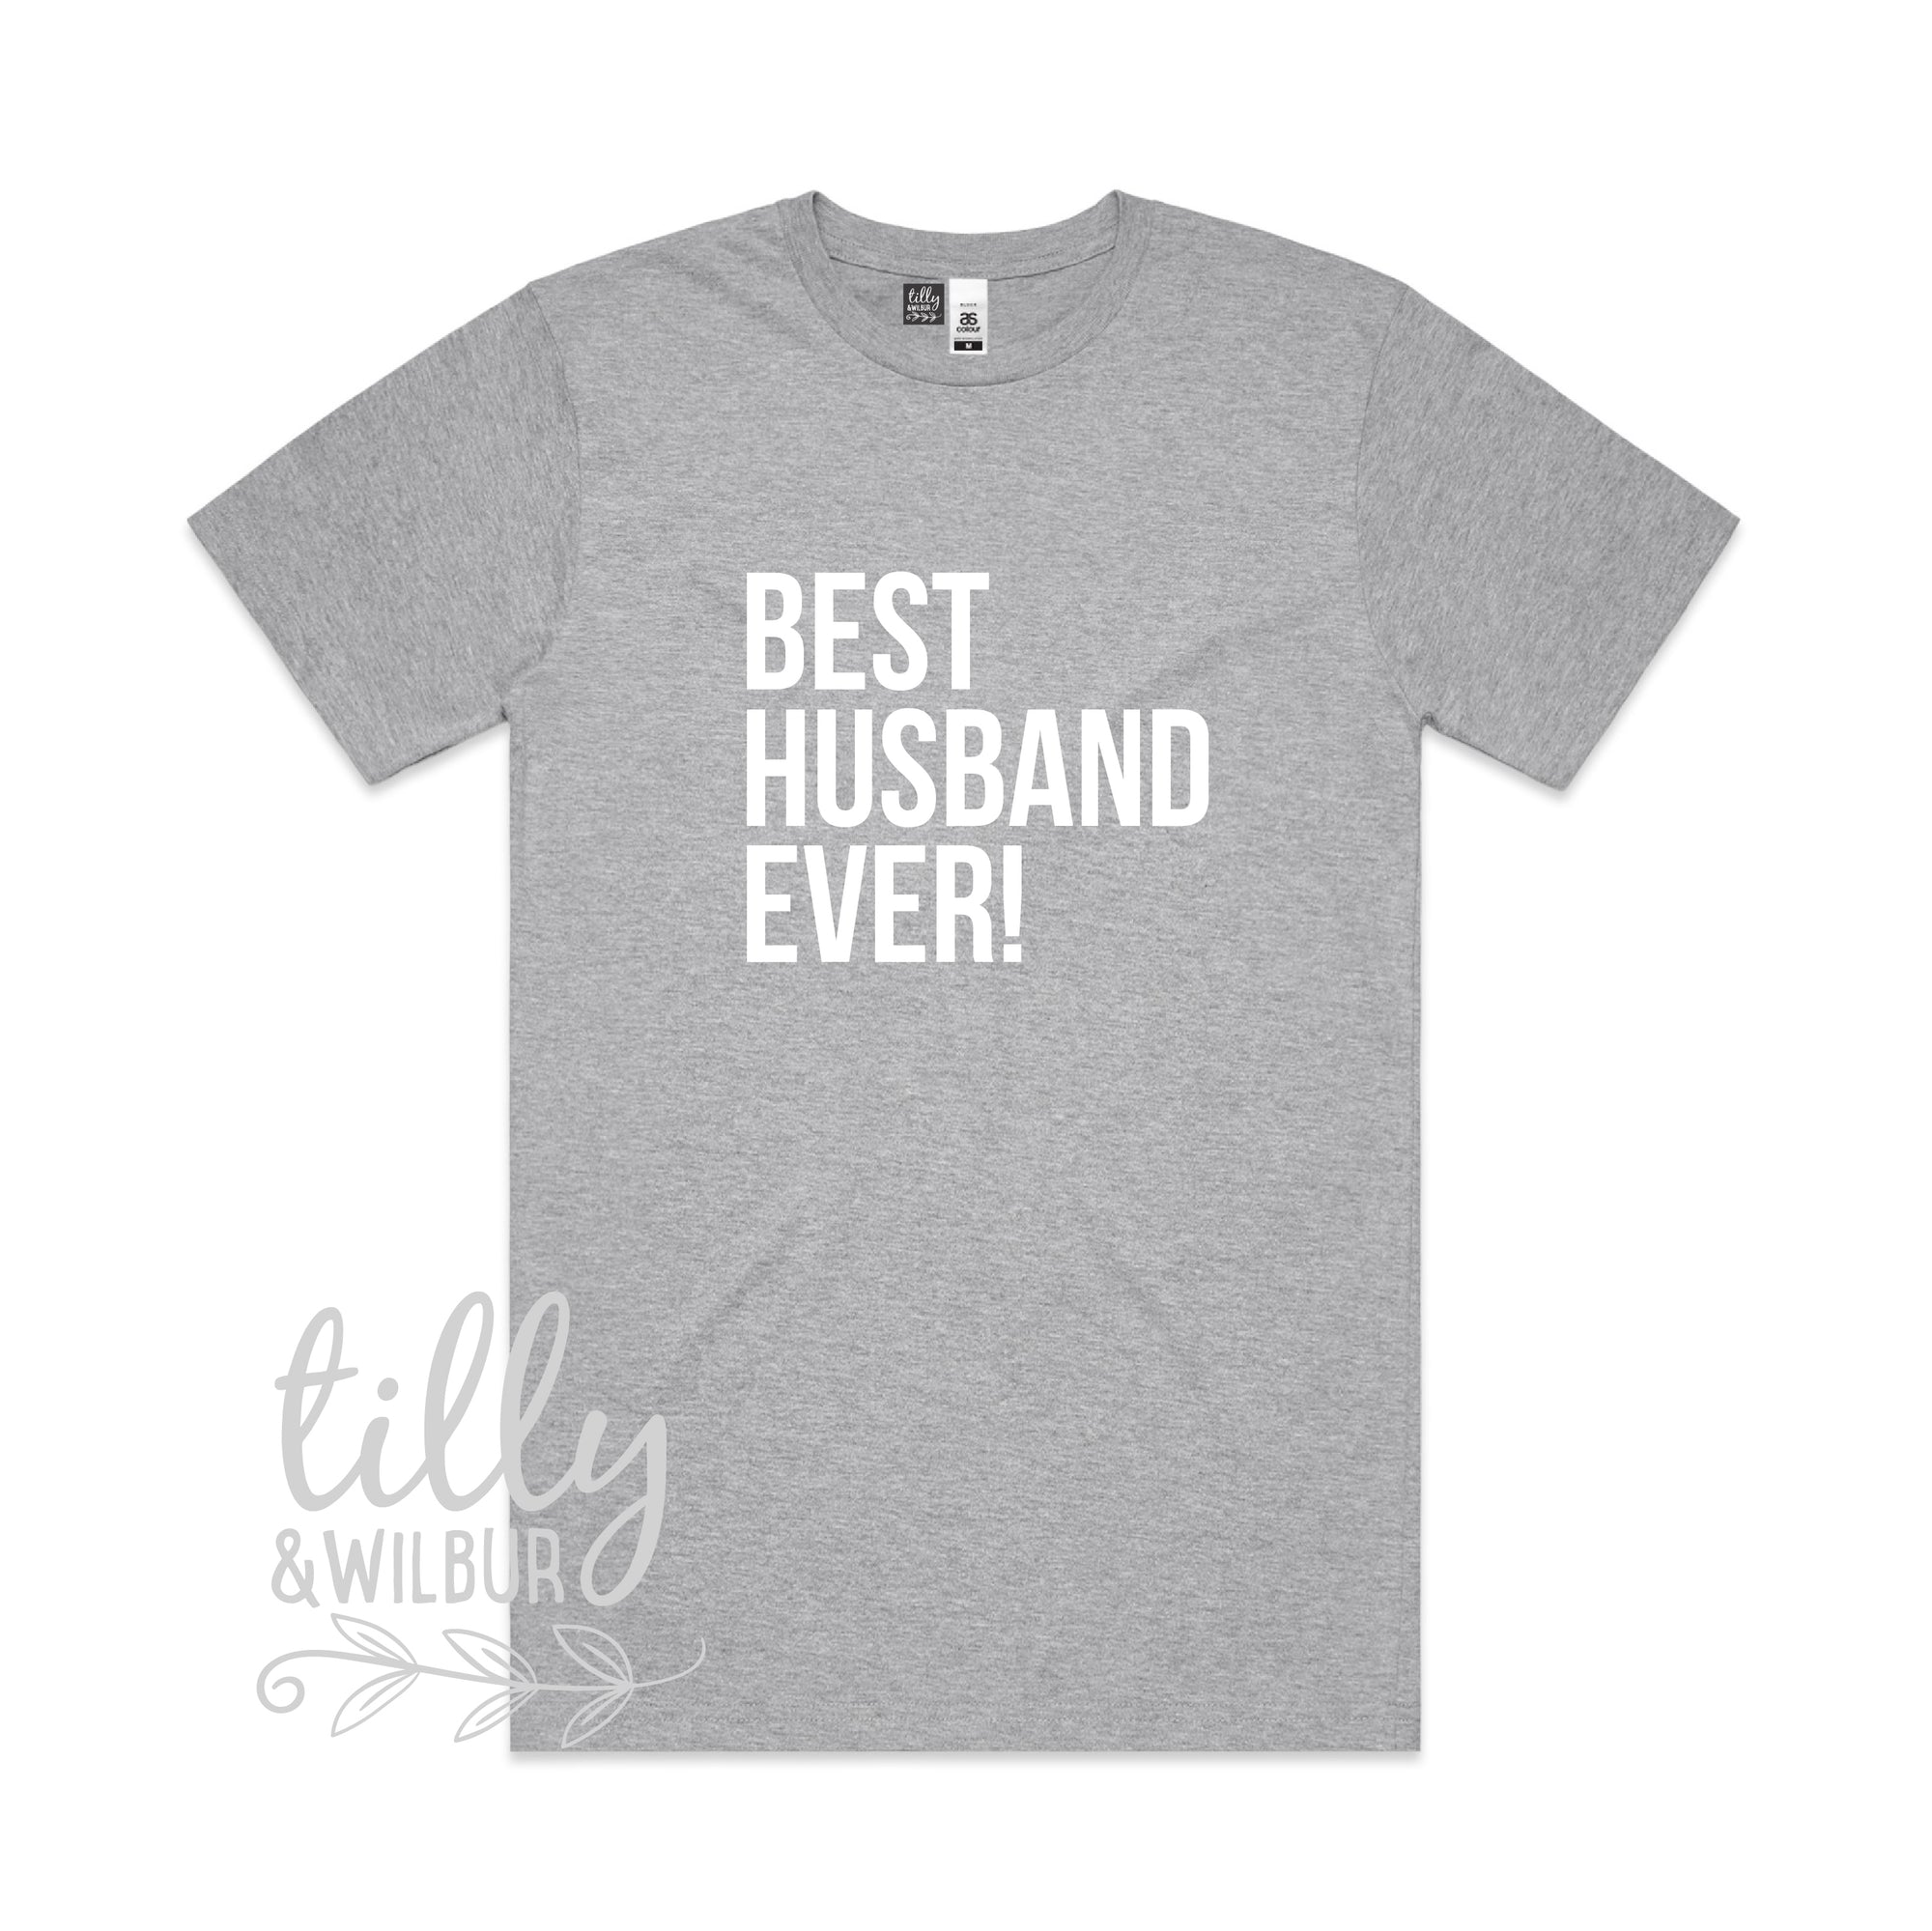 Best Husband Ever! Men's T-Shirt